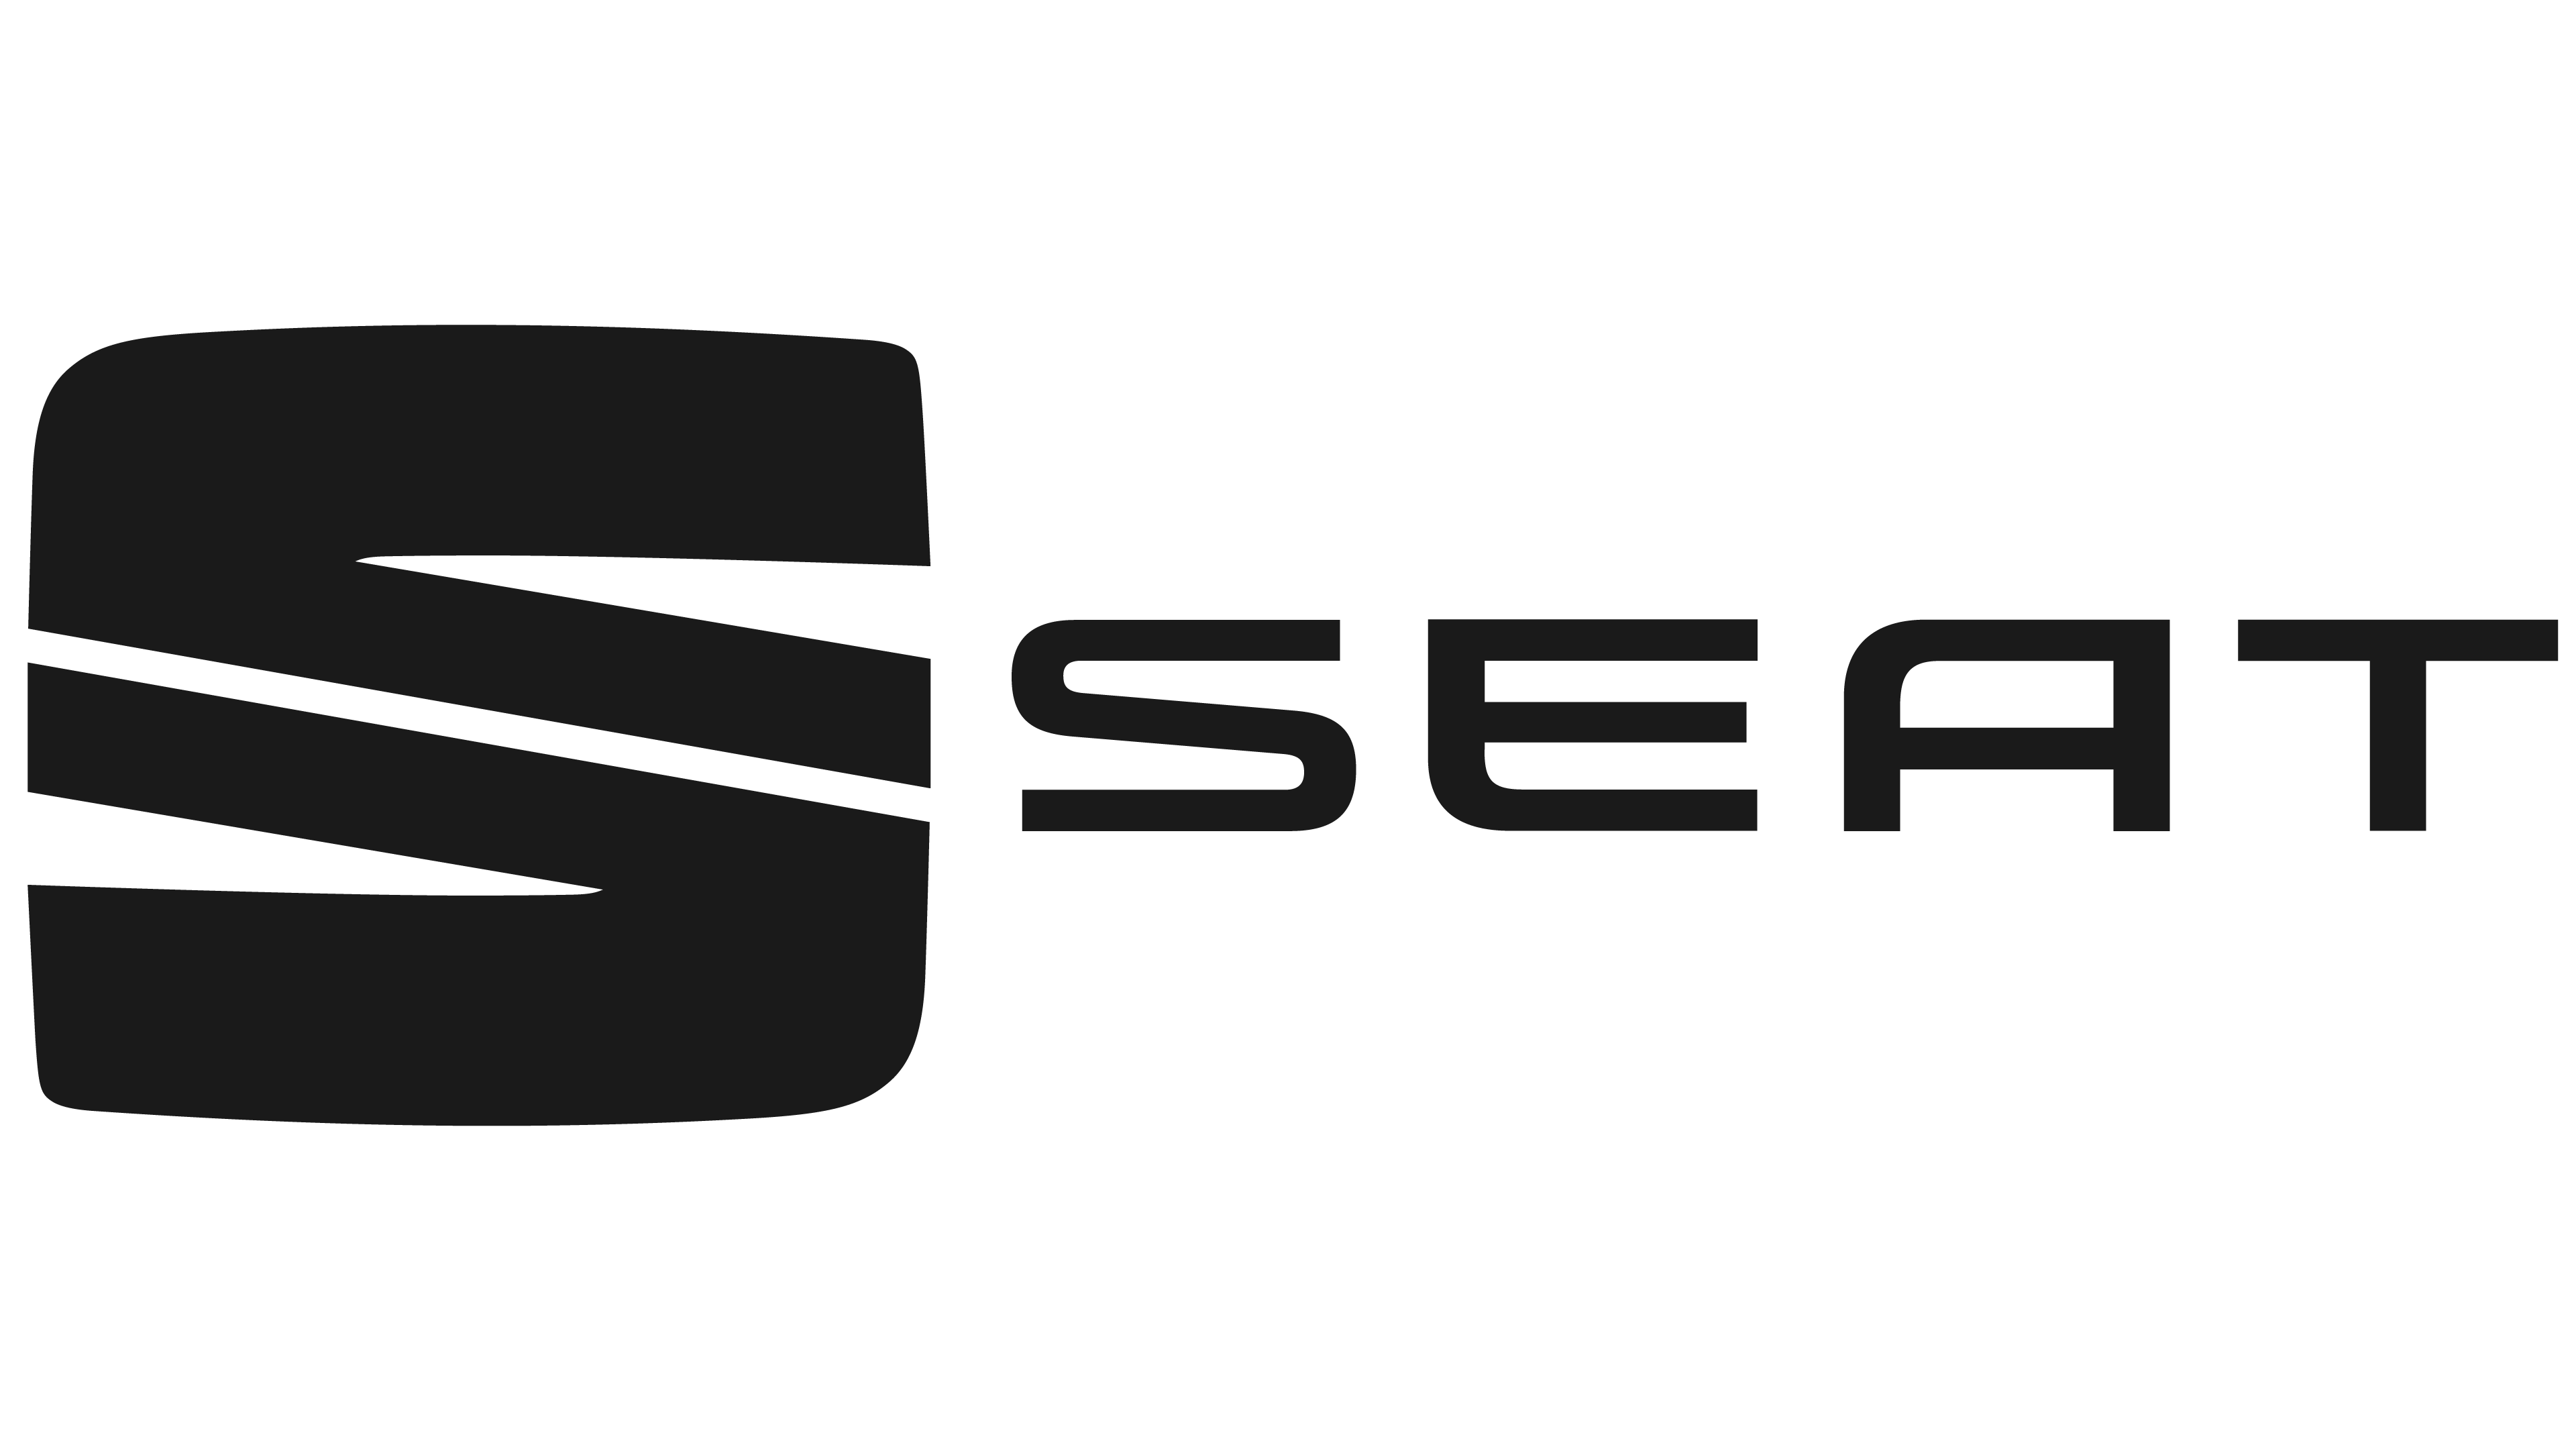 Seat – Logos Download